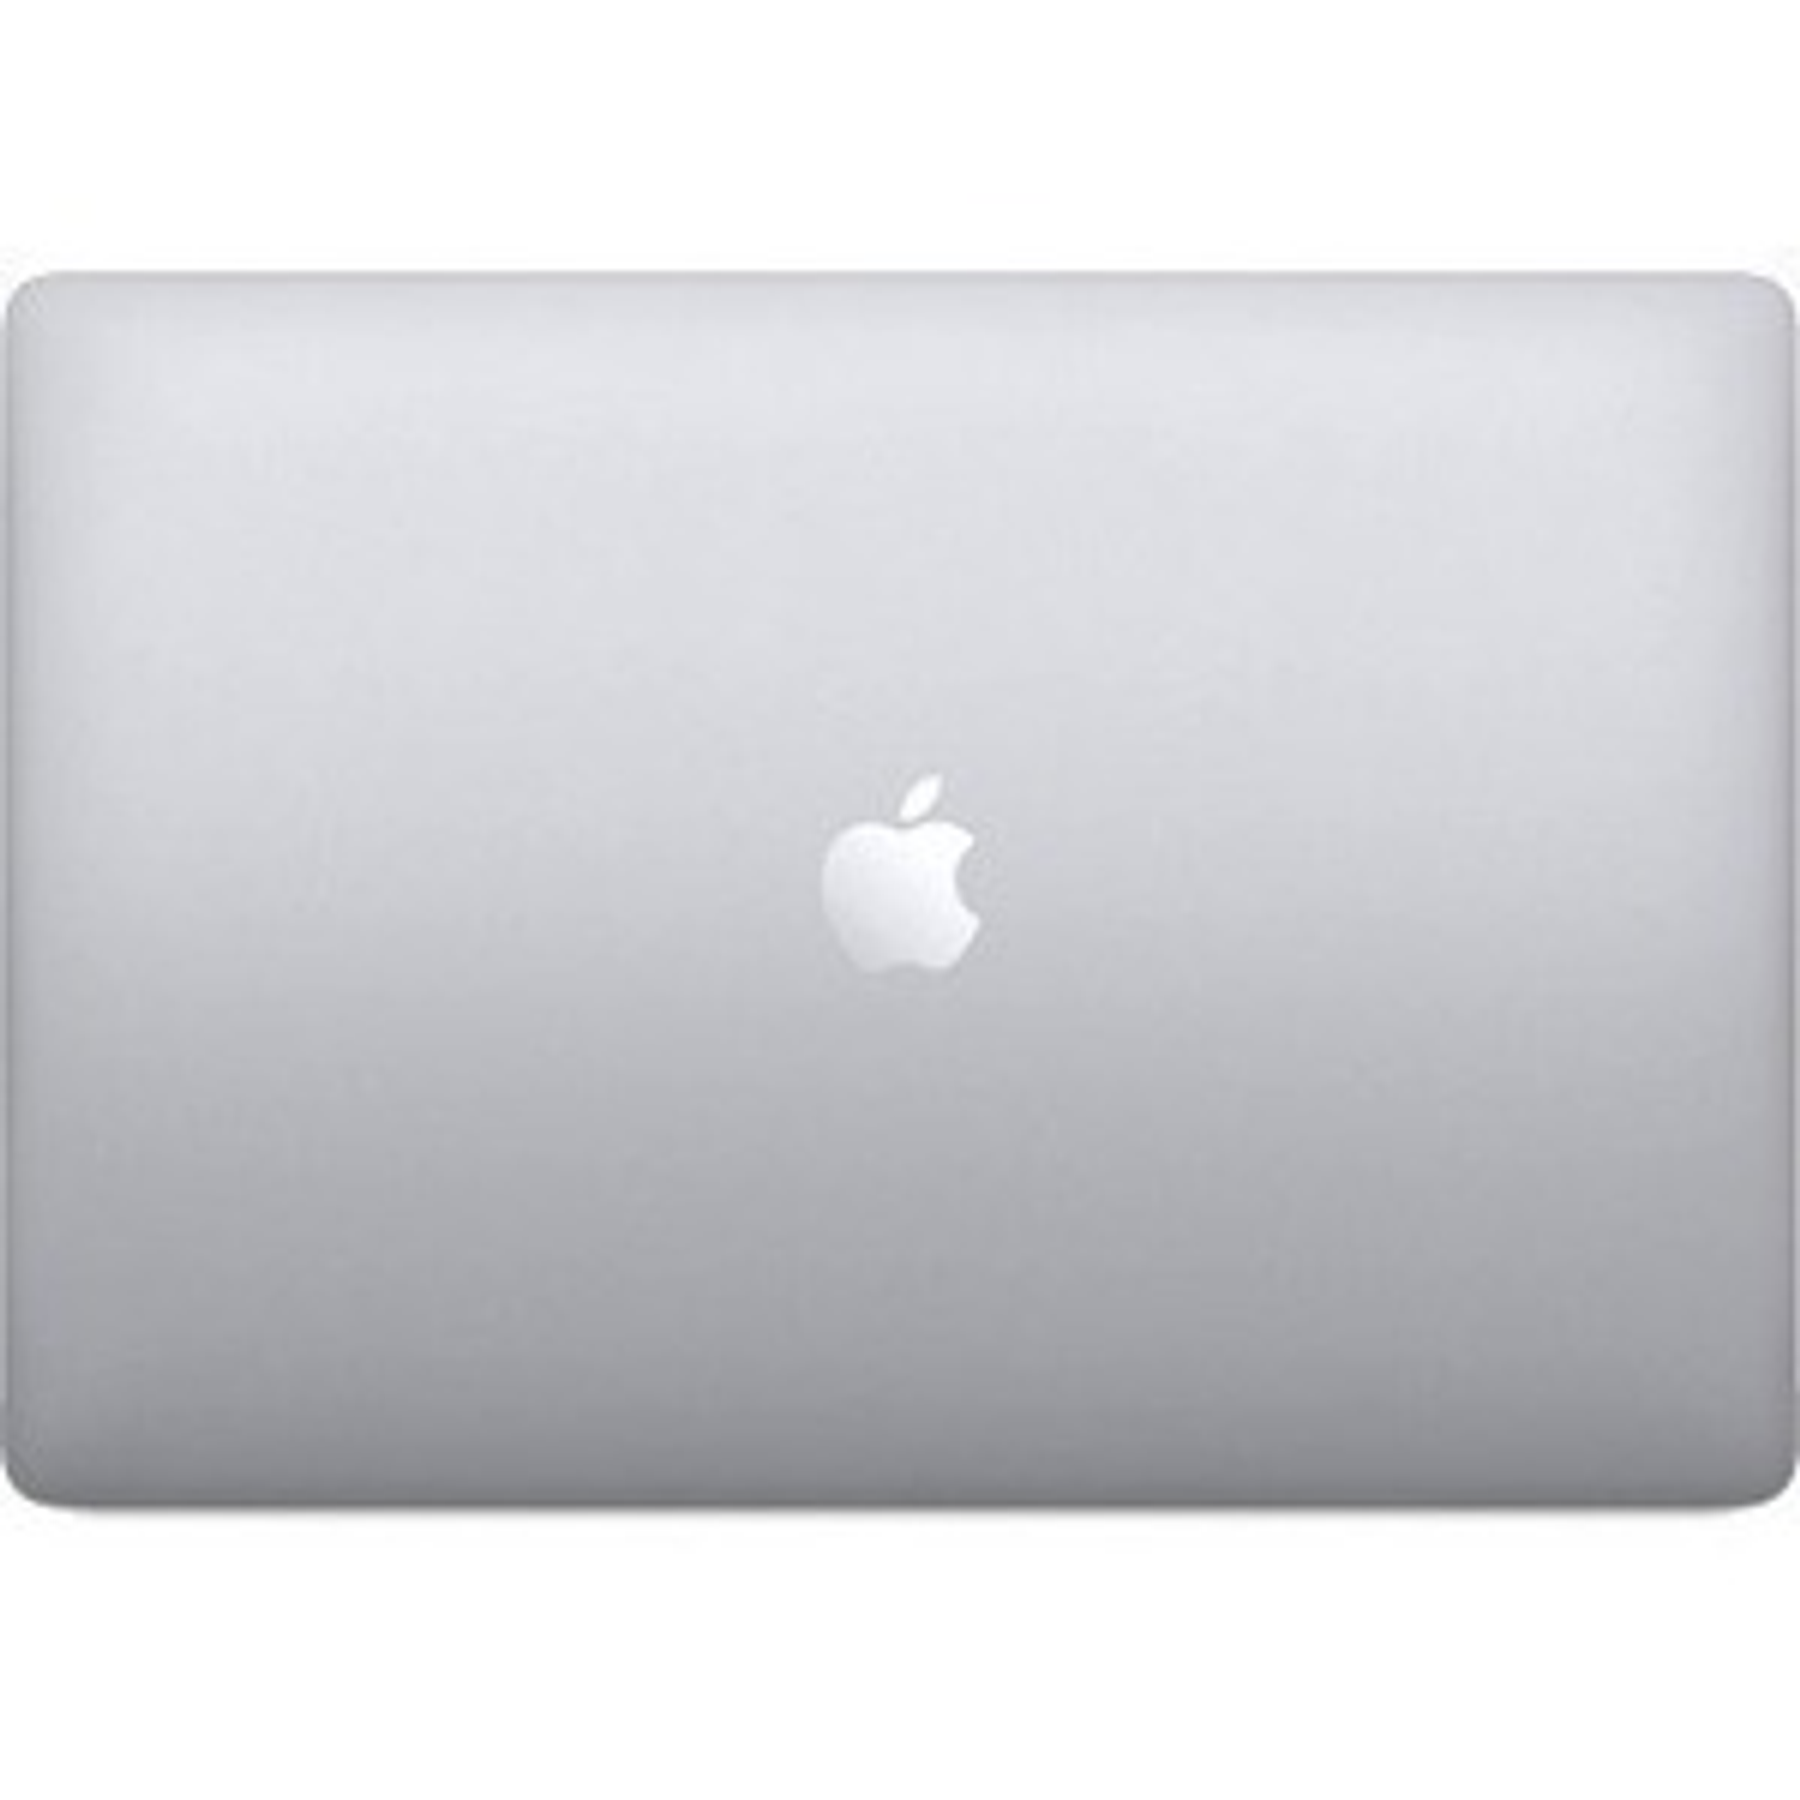 Apple MacBook Pro Retina de 13.3“